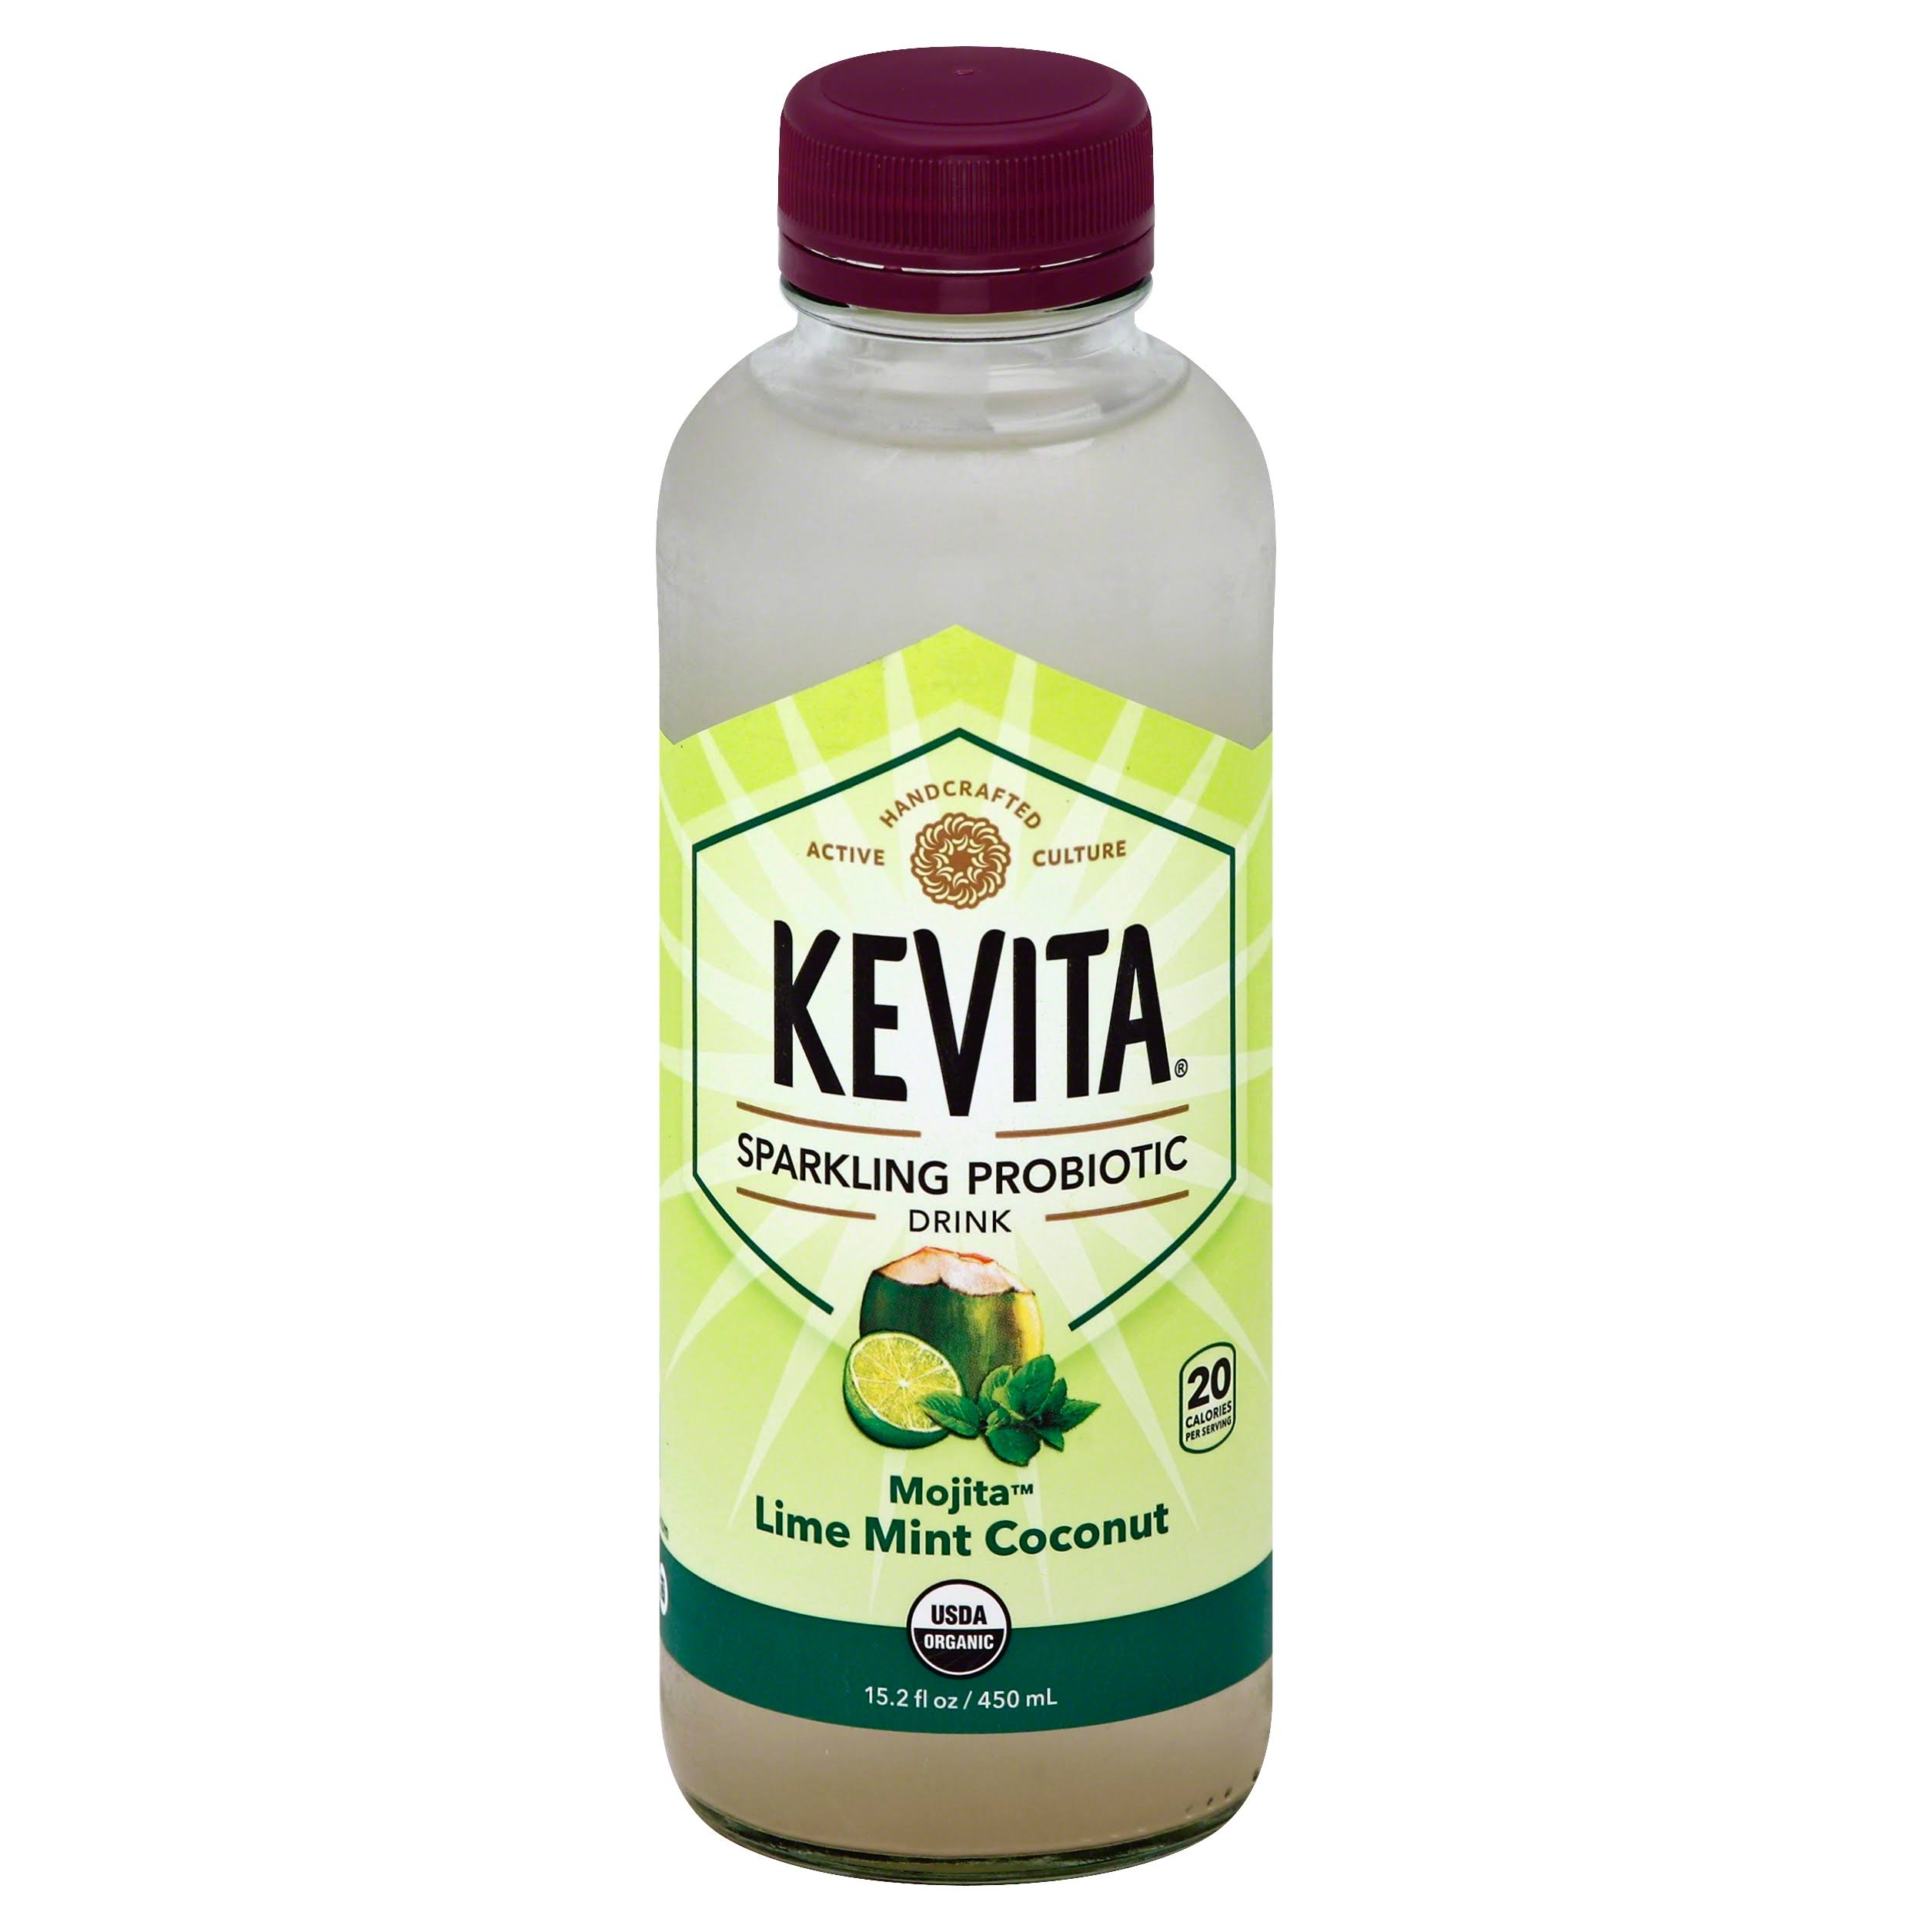 KeVita Sparkling Probiotic Drink - Lime Mint Coconut, 15.2oz